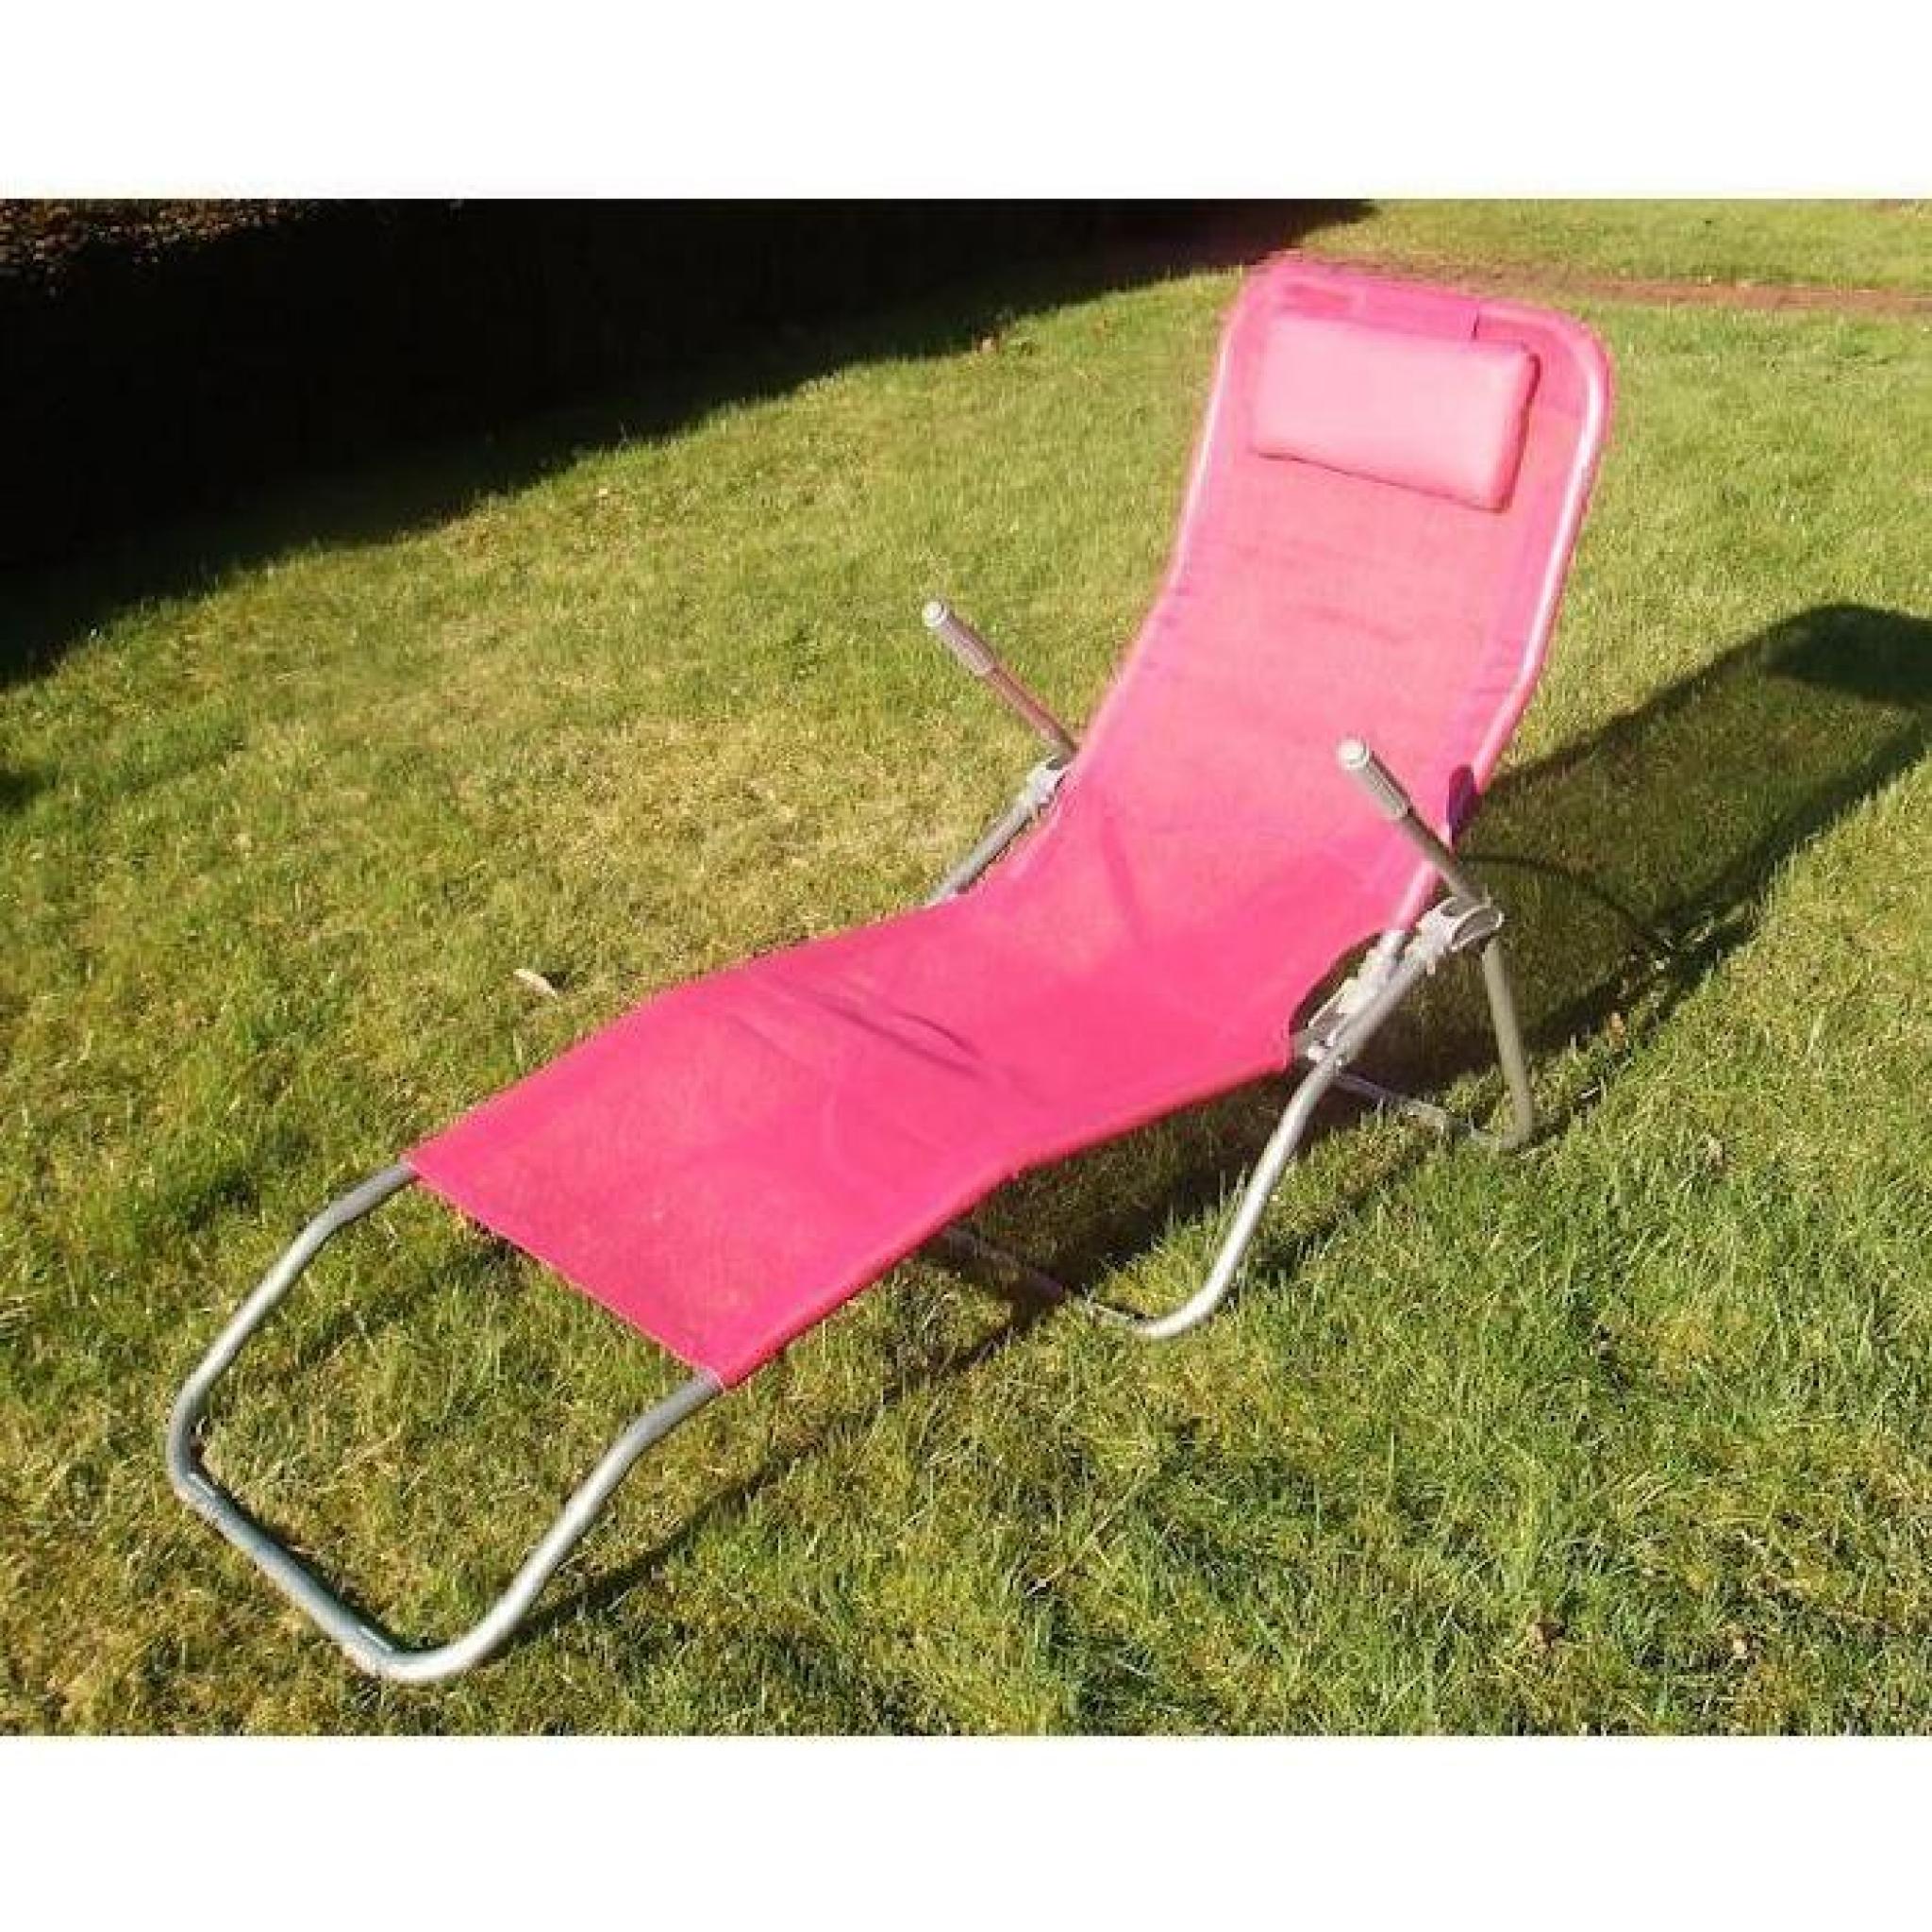 Sunbath en rose - chaises longues confortables avec repose - pieds rabattable